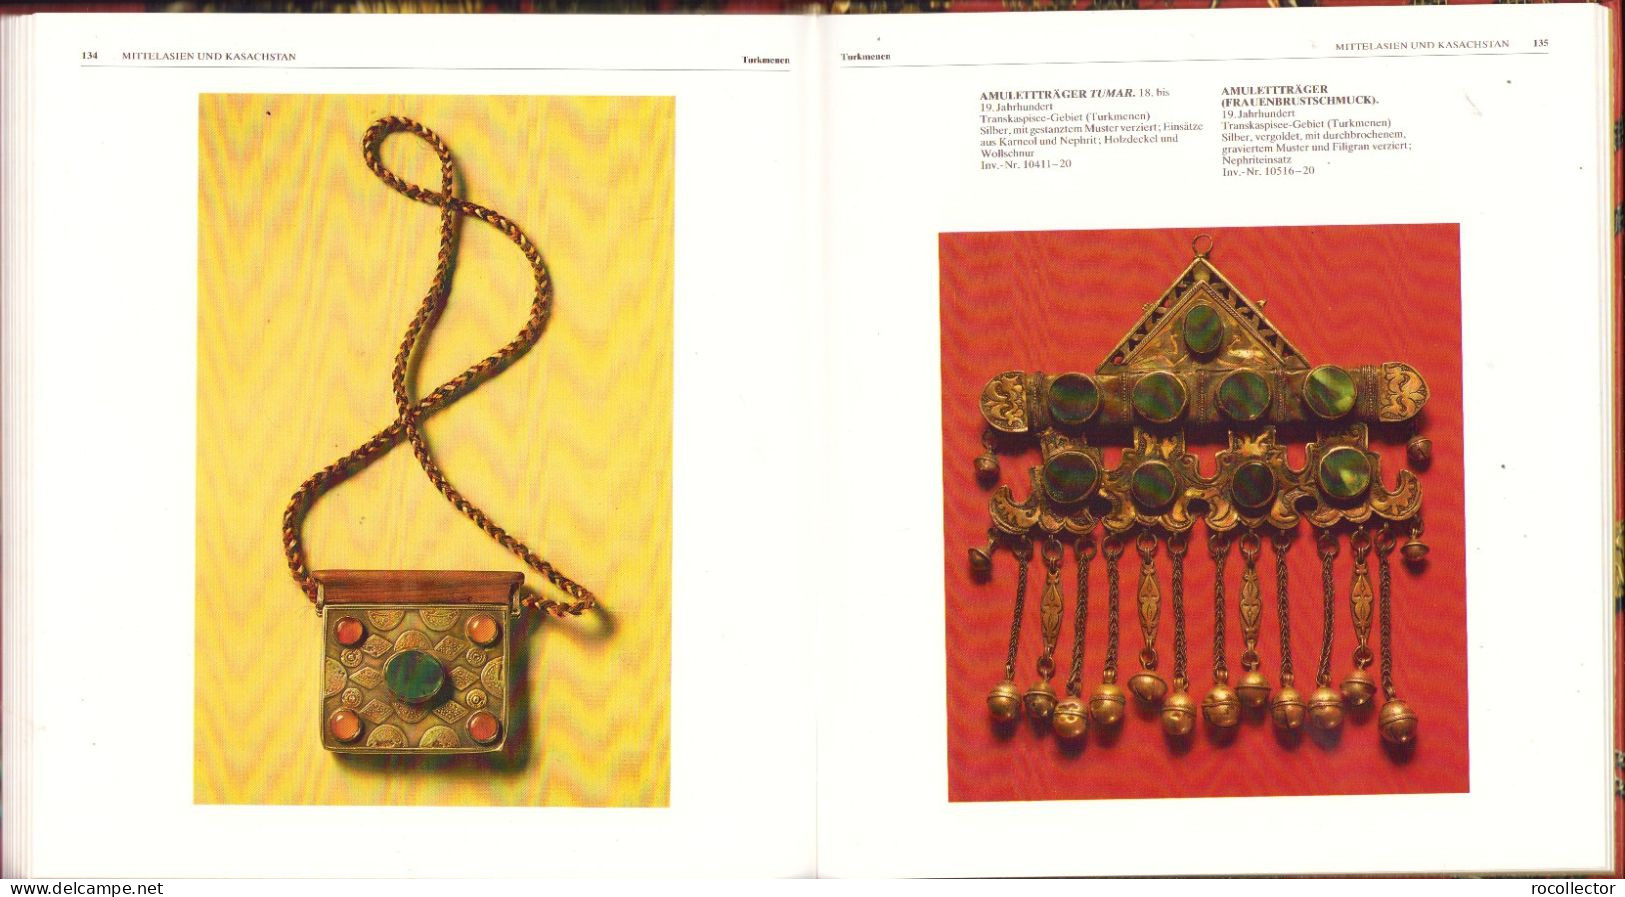 Juwelier-erzeugnisse Zusammengestelt Von Galina Komleva 1988 Ethnographisches Museum Der Völker Der UdSSR Leningrad - Alte Bücher